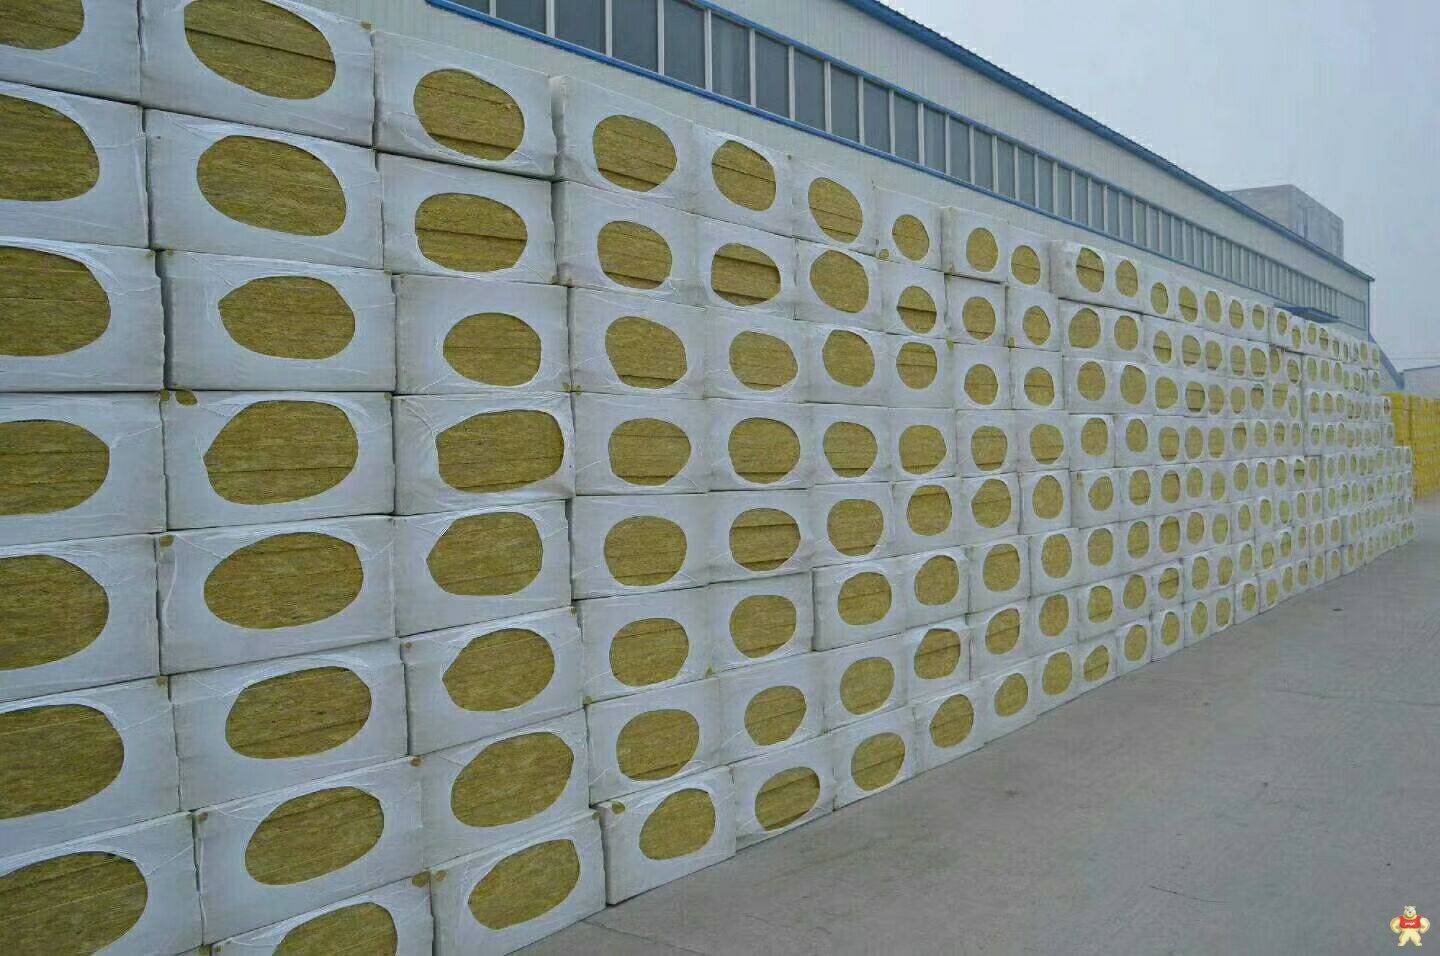 生产外墙防水岩棉板公司 外墙防水岩棉板厂家直销 岩棉复合板,岩棉保温板,岩棉,聚氨酯岩棉复合板,复合岩棉板